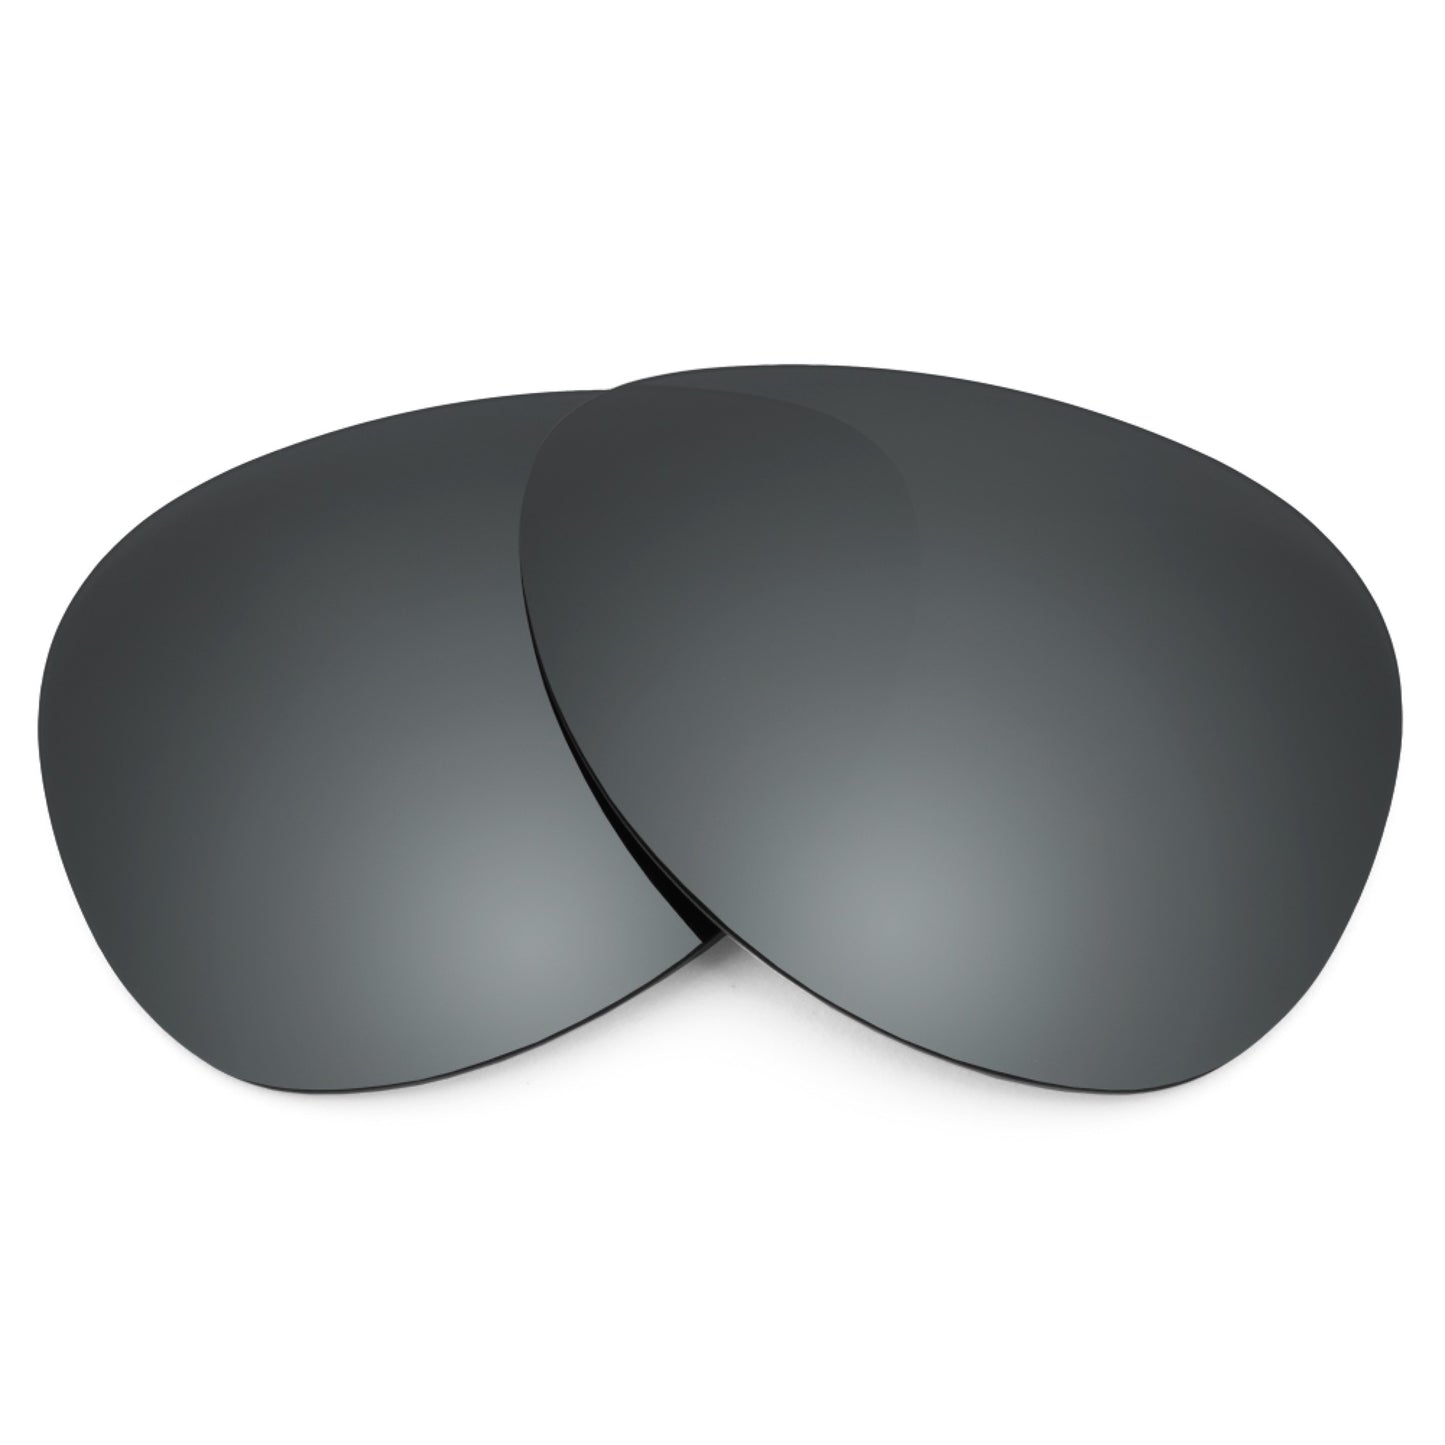 Revant replacement lenses for Maui Jim Swinging Bridges MJ787 Non-Polarized Black Chrome